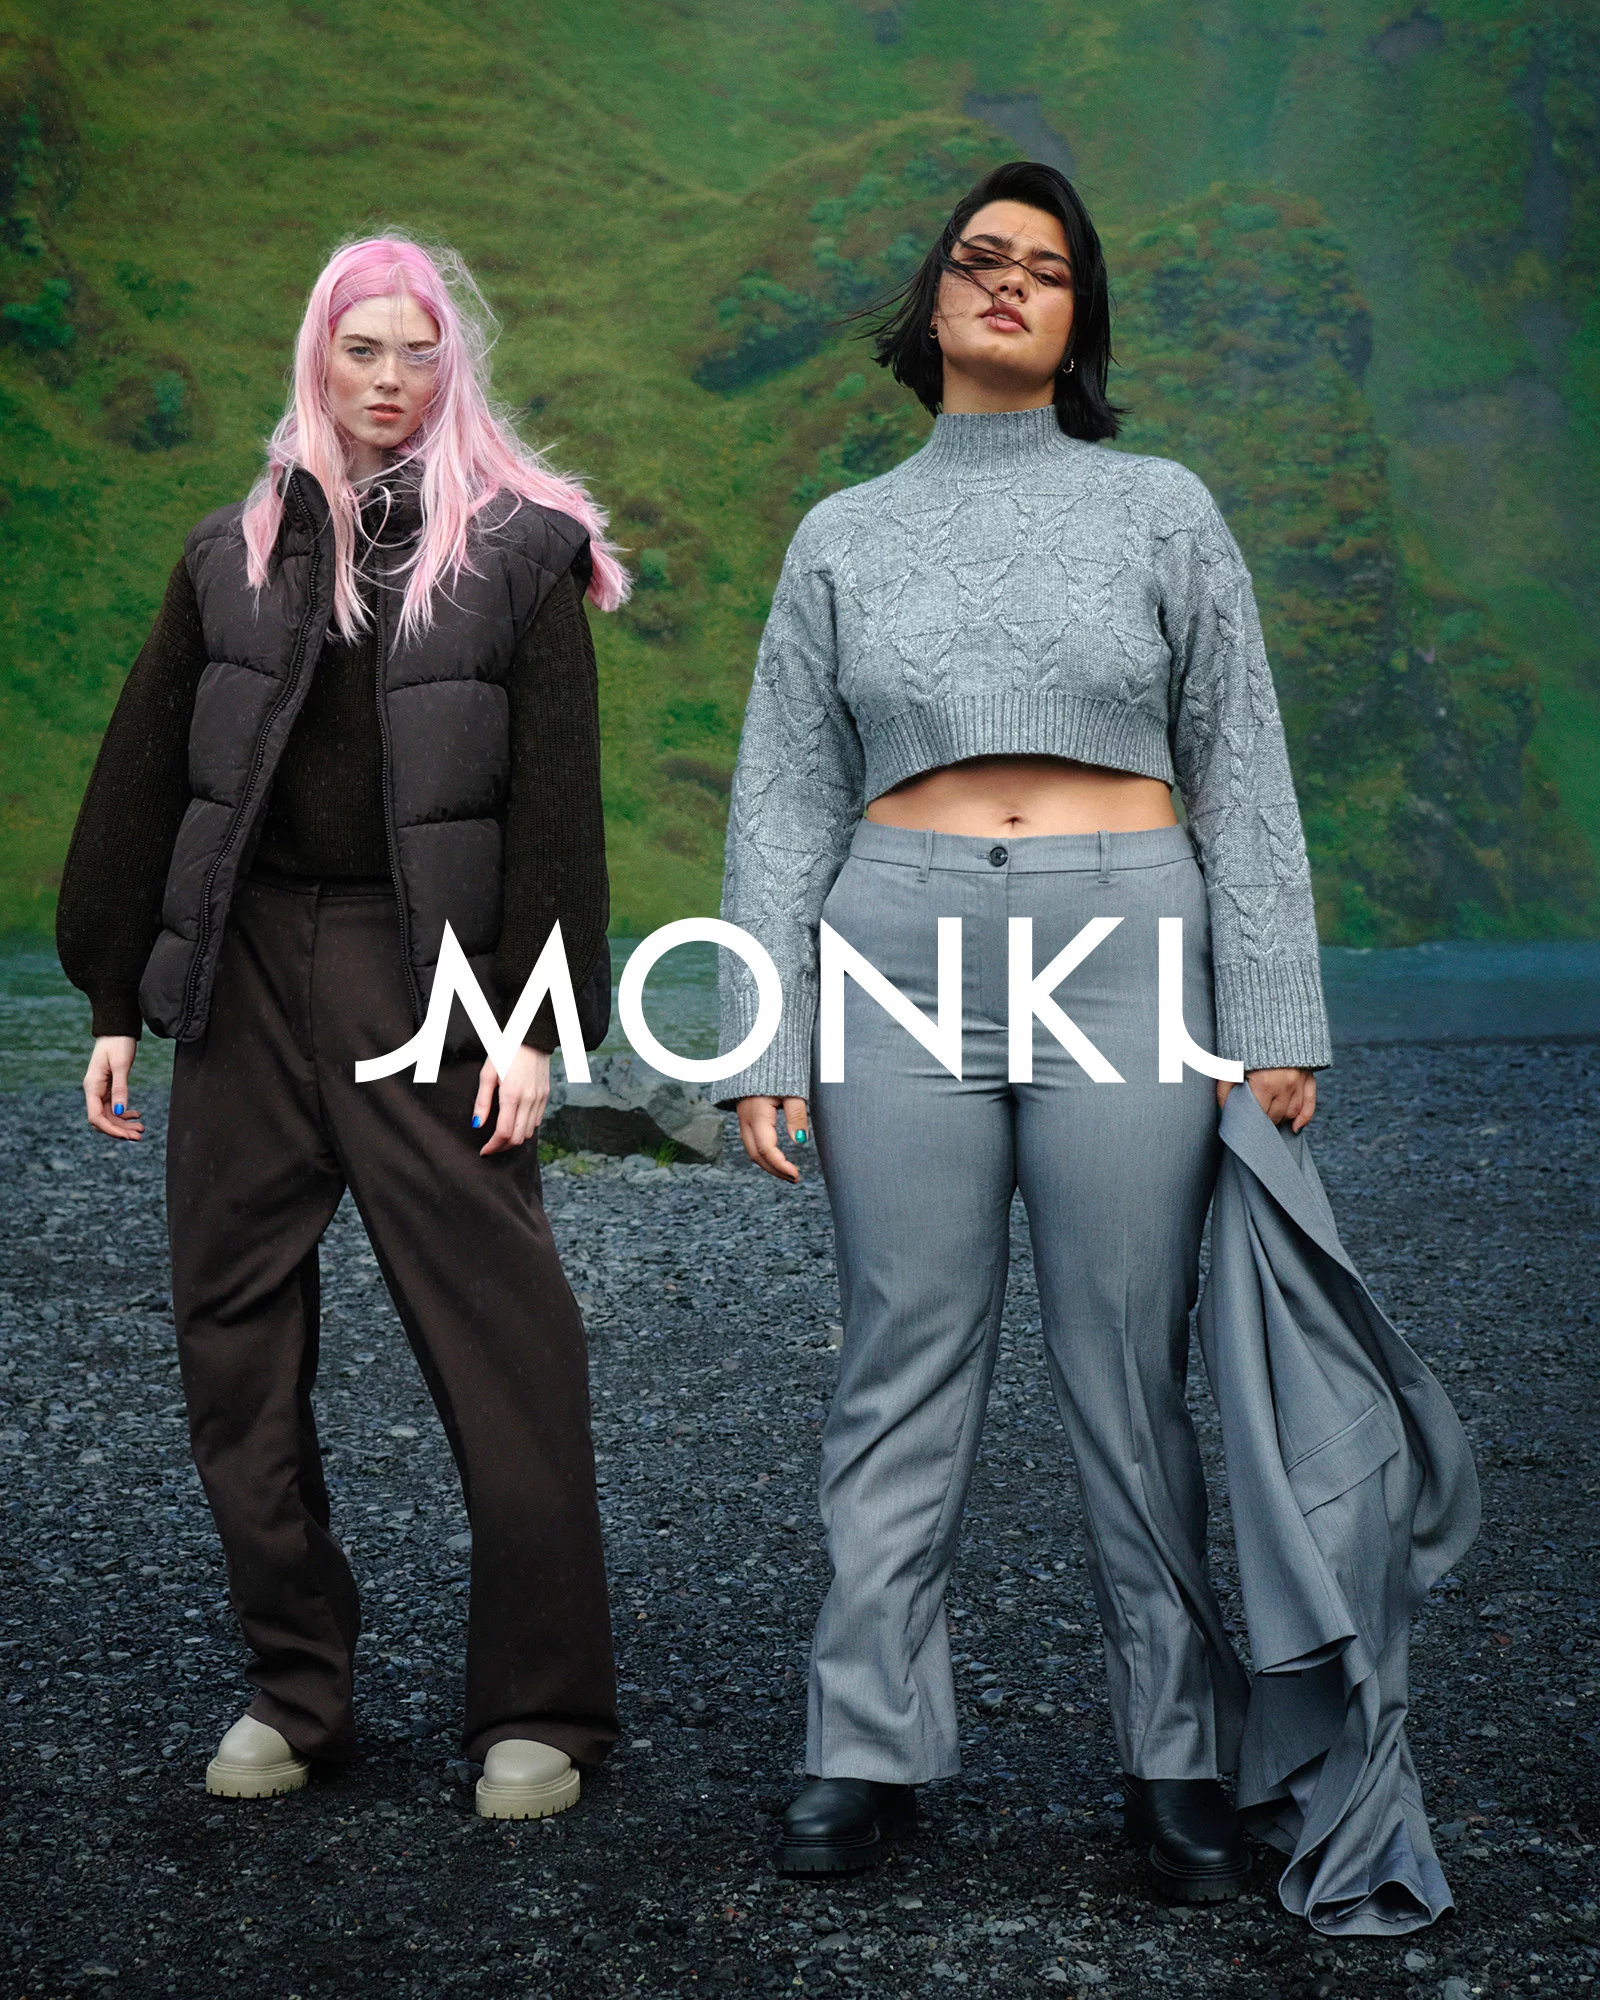 MONKI 6 by Tobias LUNDKVIST